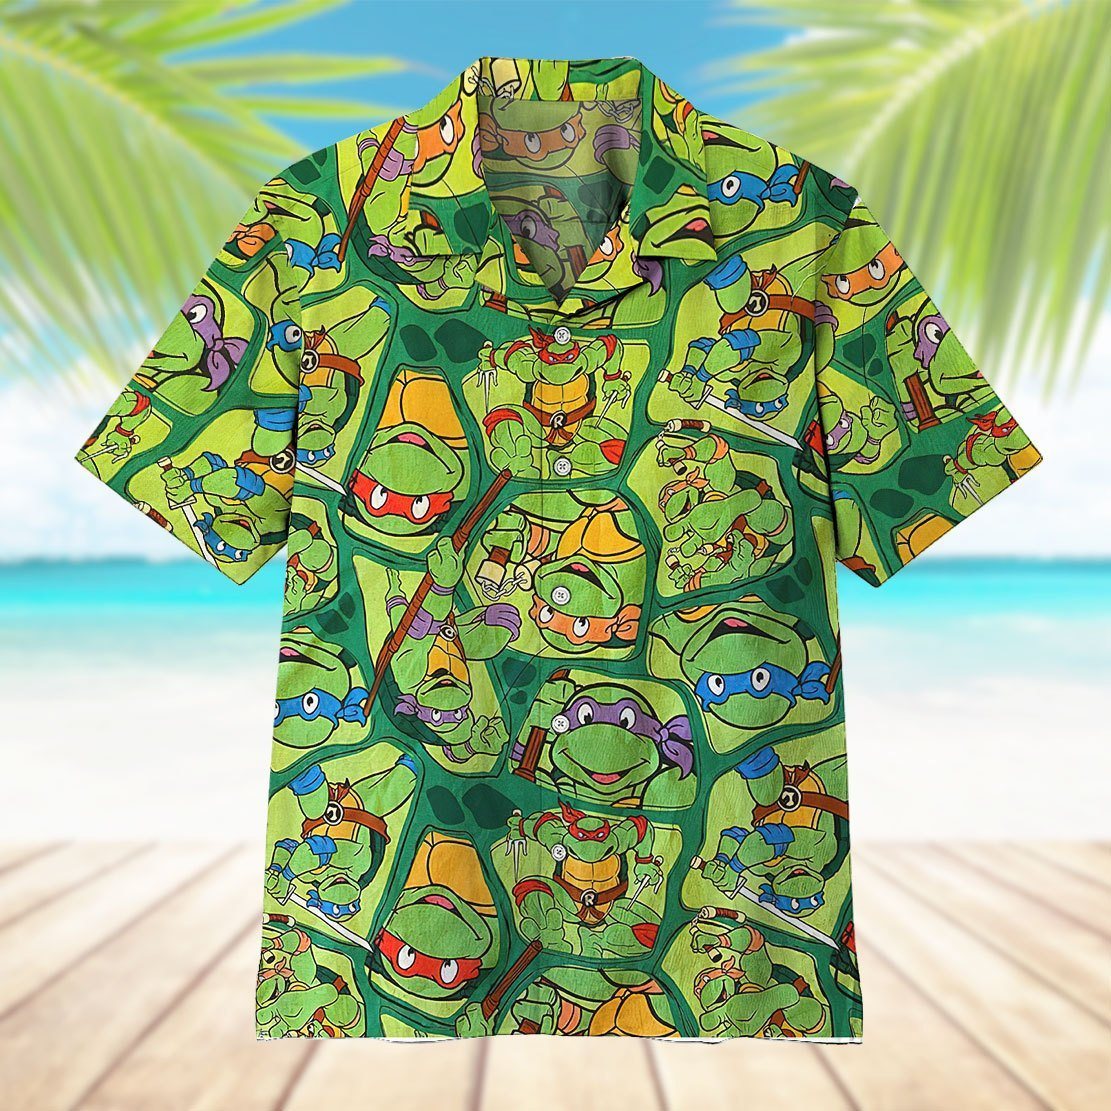 The Teenage Mutant Ninja Turtles TMNT Hawaii Shirt